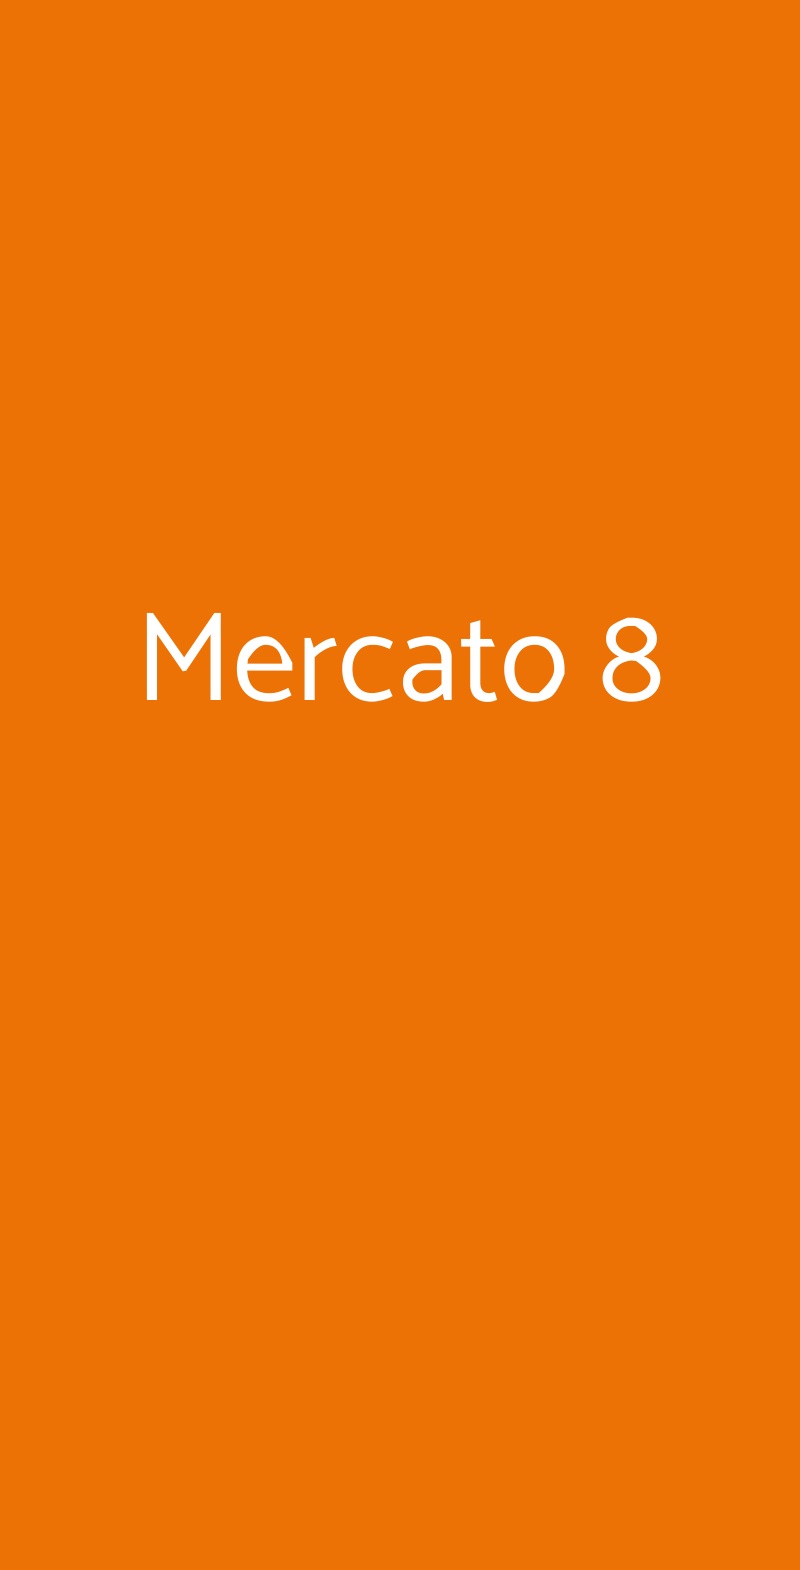 Mercato 8 Roma menù 1 pagina